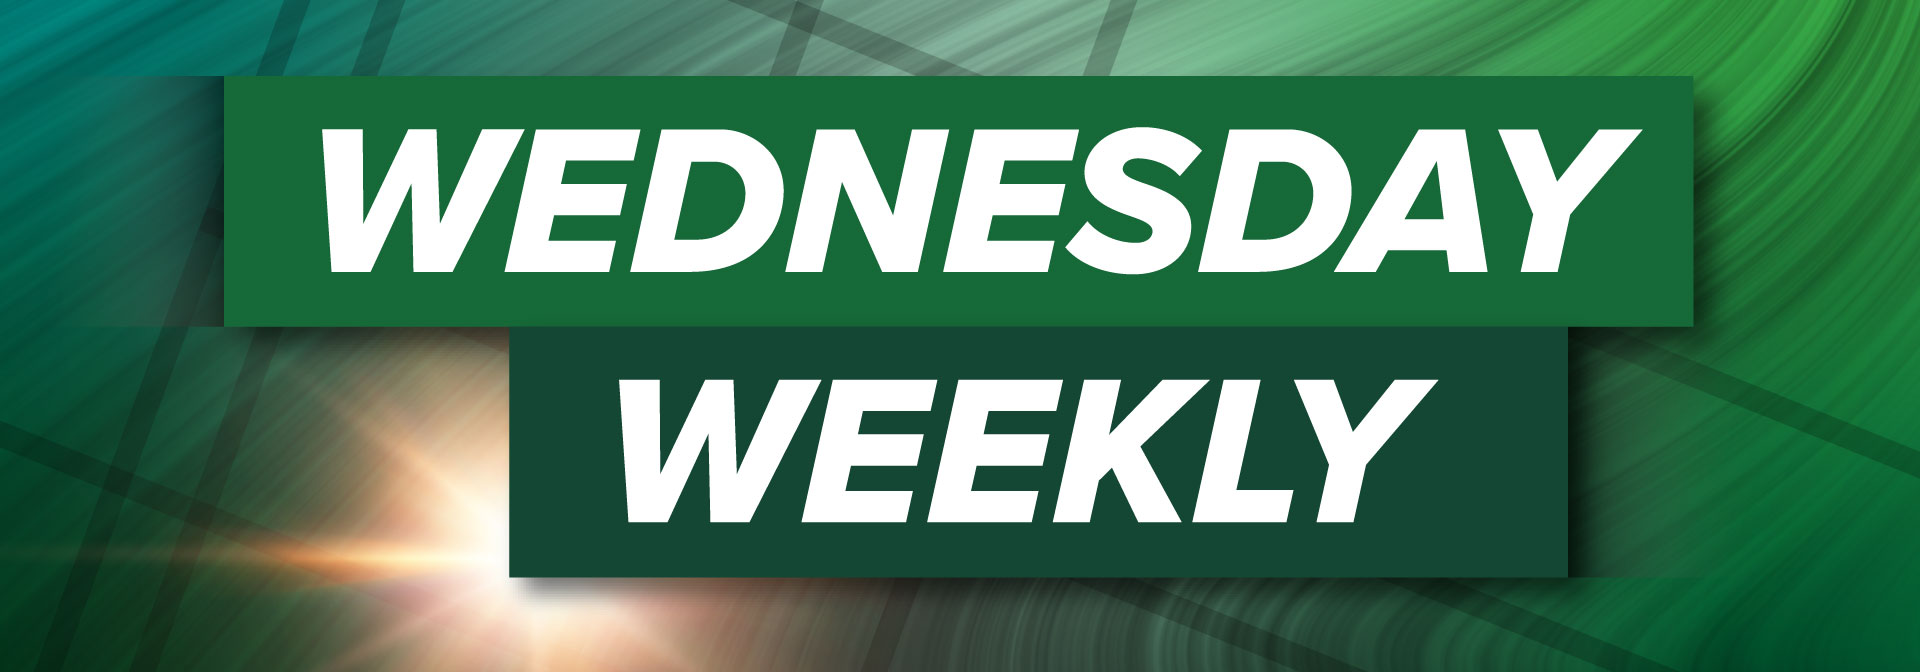 Wednesday Weekly